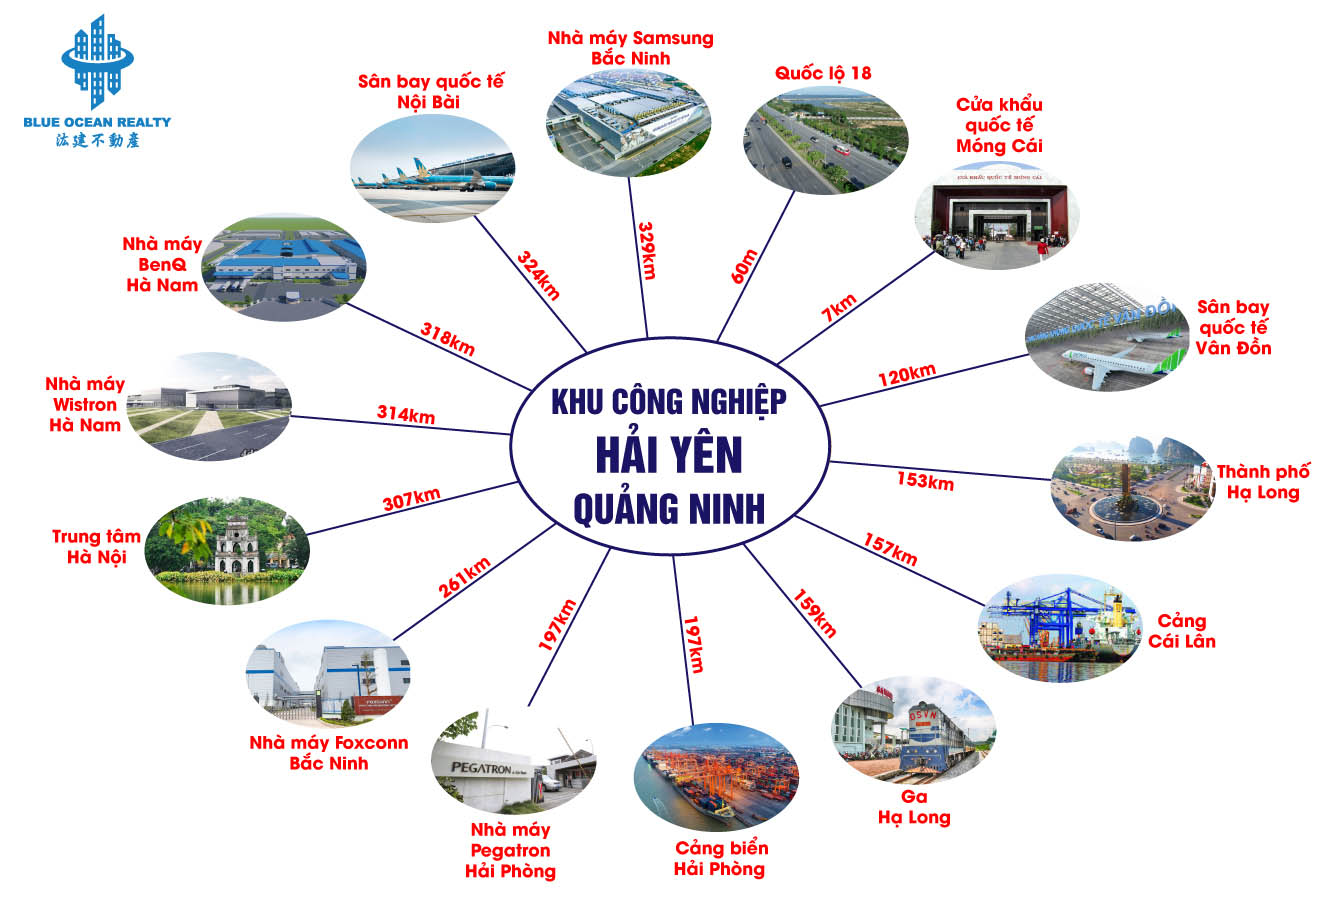 Khu công nghiệp (KCN) Hải Yên - Quảng Ninh